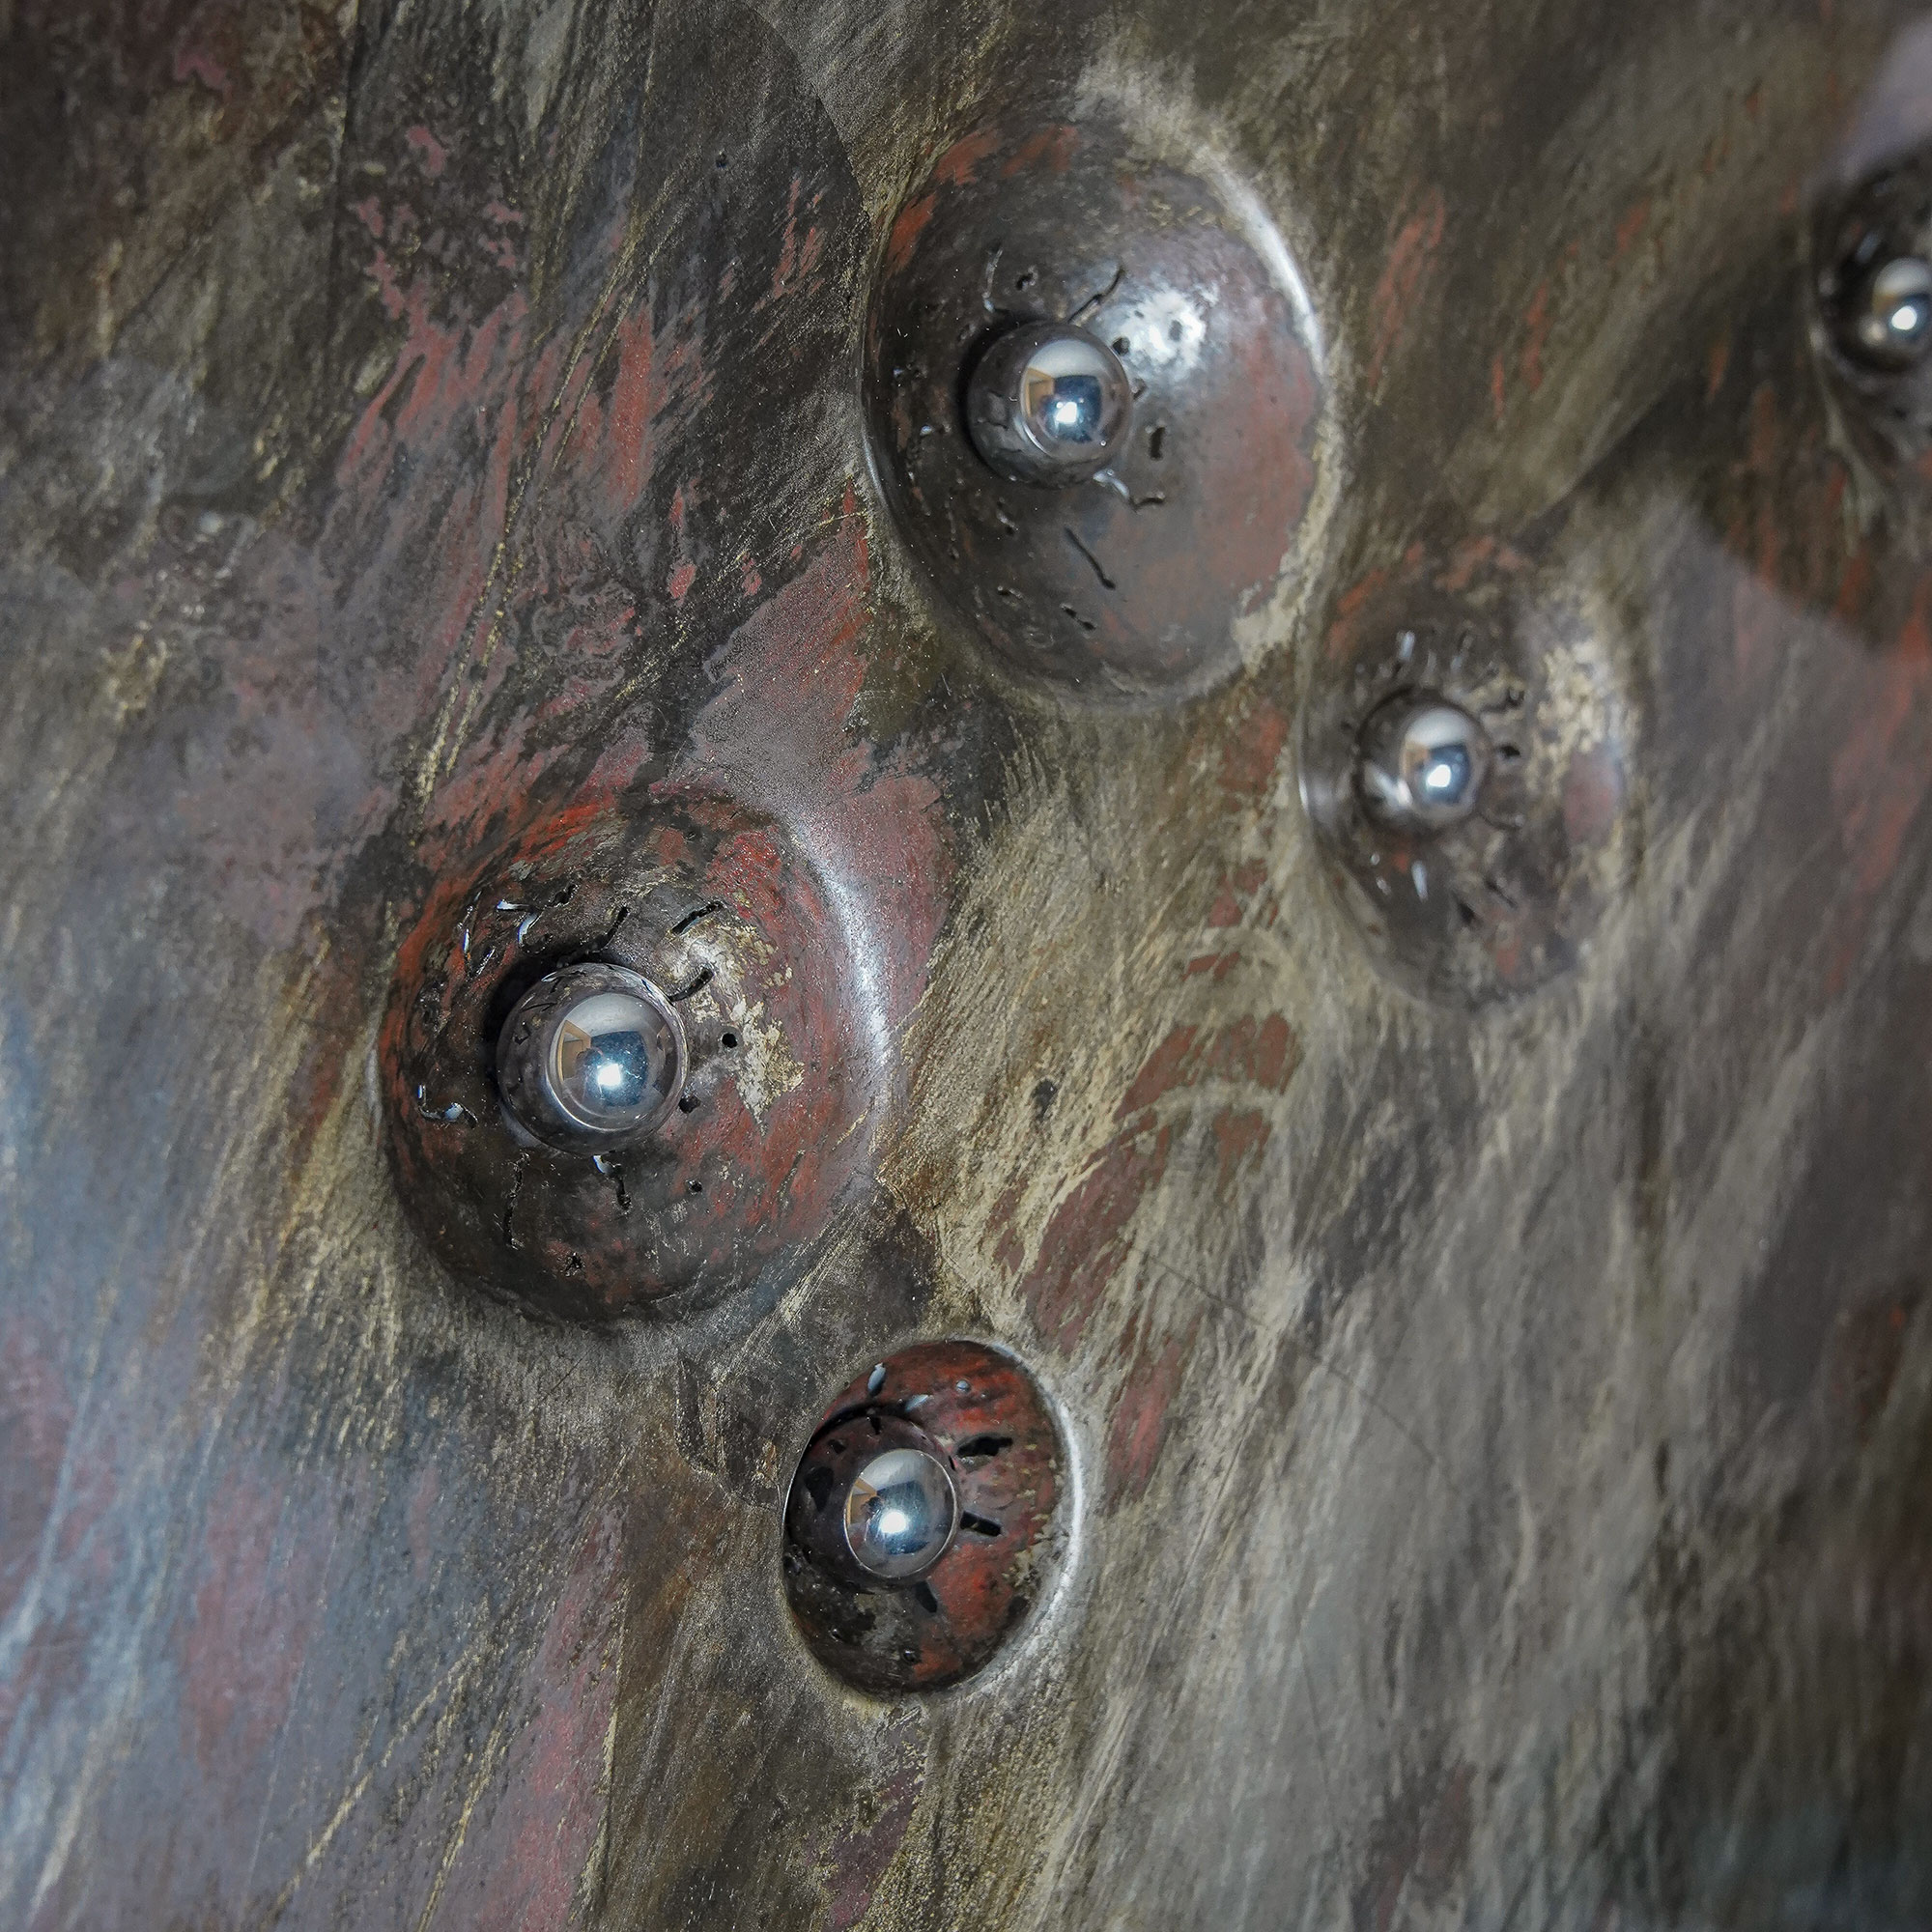 Stahlbild bzw. Bild aus Metall mit dem Namen „Schütze #2“ aus der Reihe Sternbilder von Daniel Springer. Kugeln in Silber, Bilderrahmen in Alu.